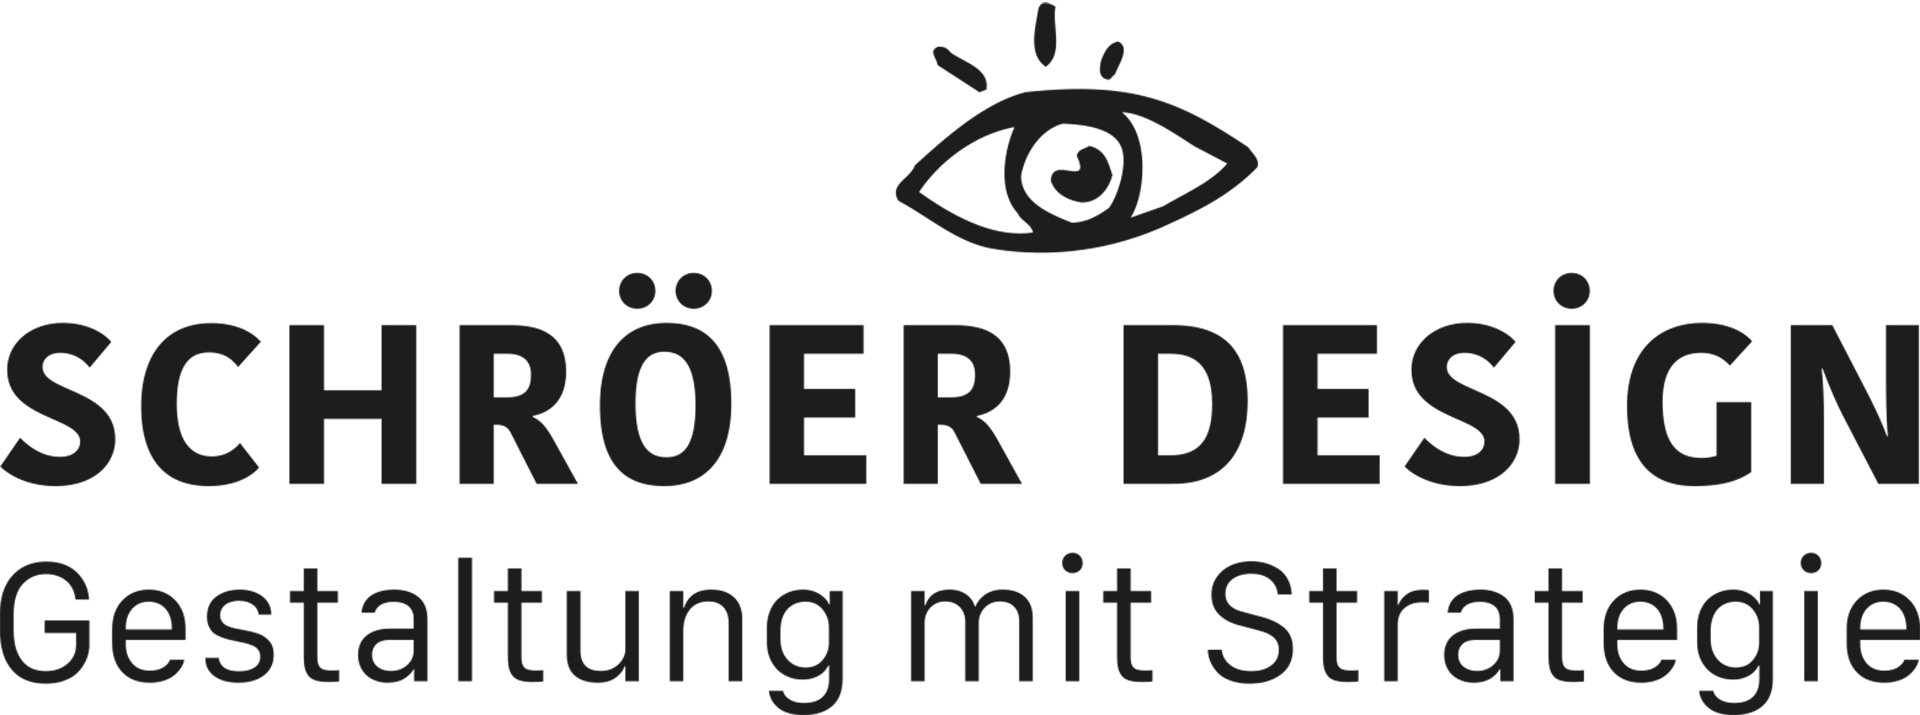 Bild: Schröer Design Gestaltung mit Strategie - Logo mit Auge